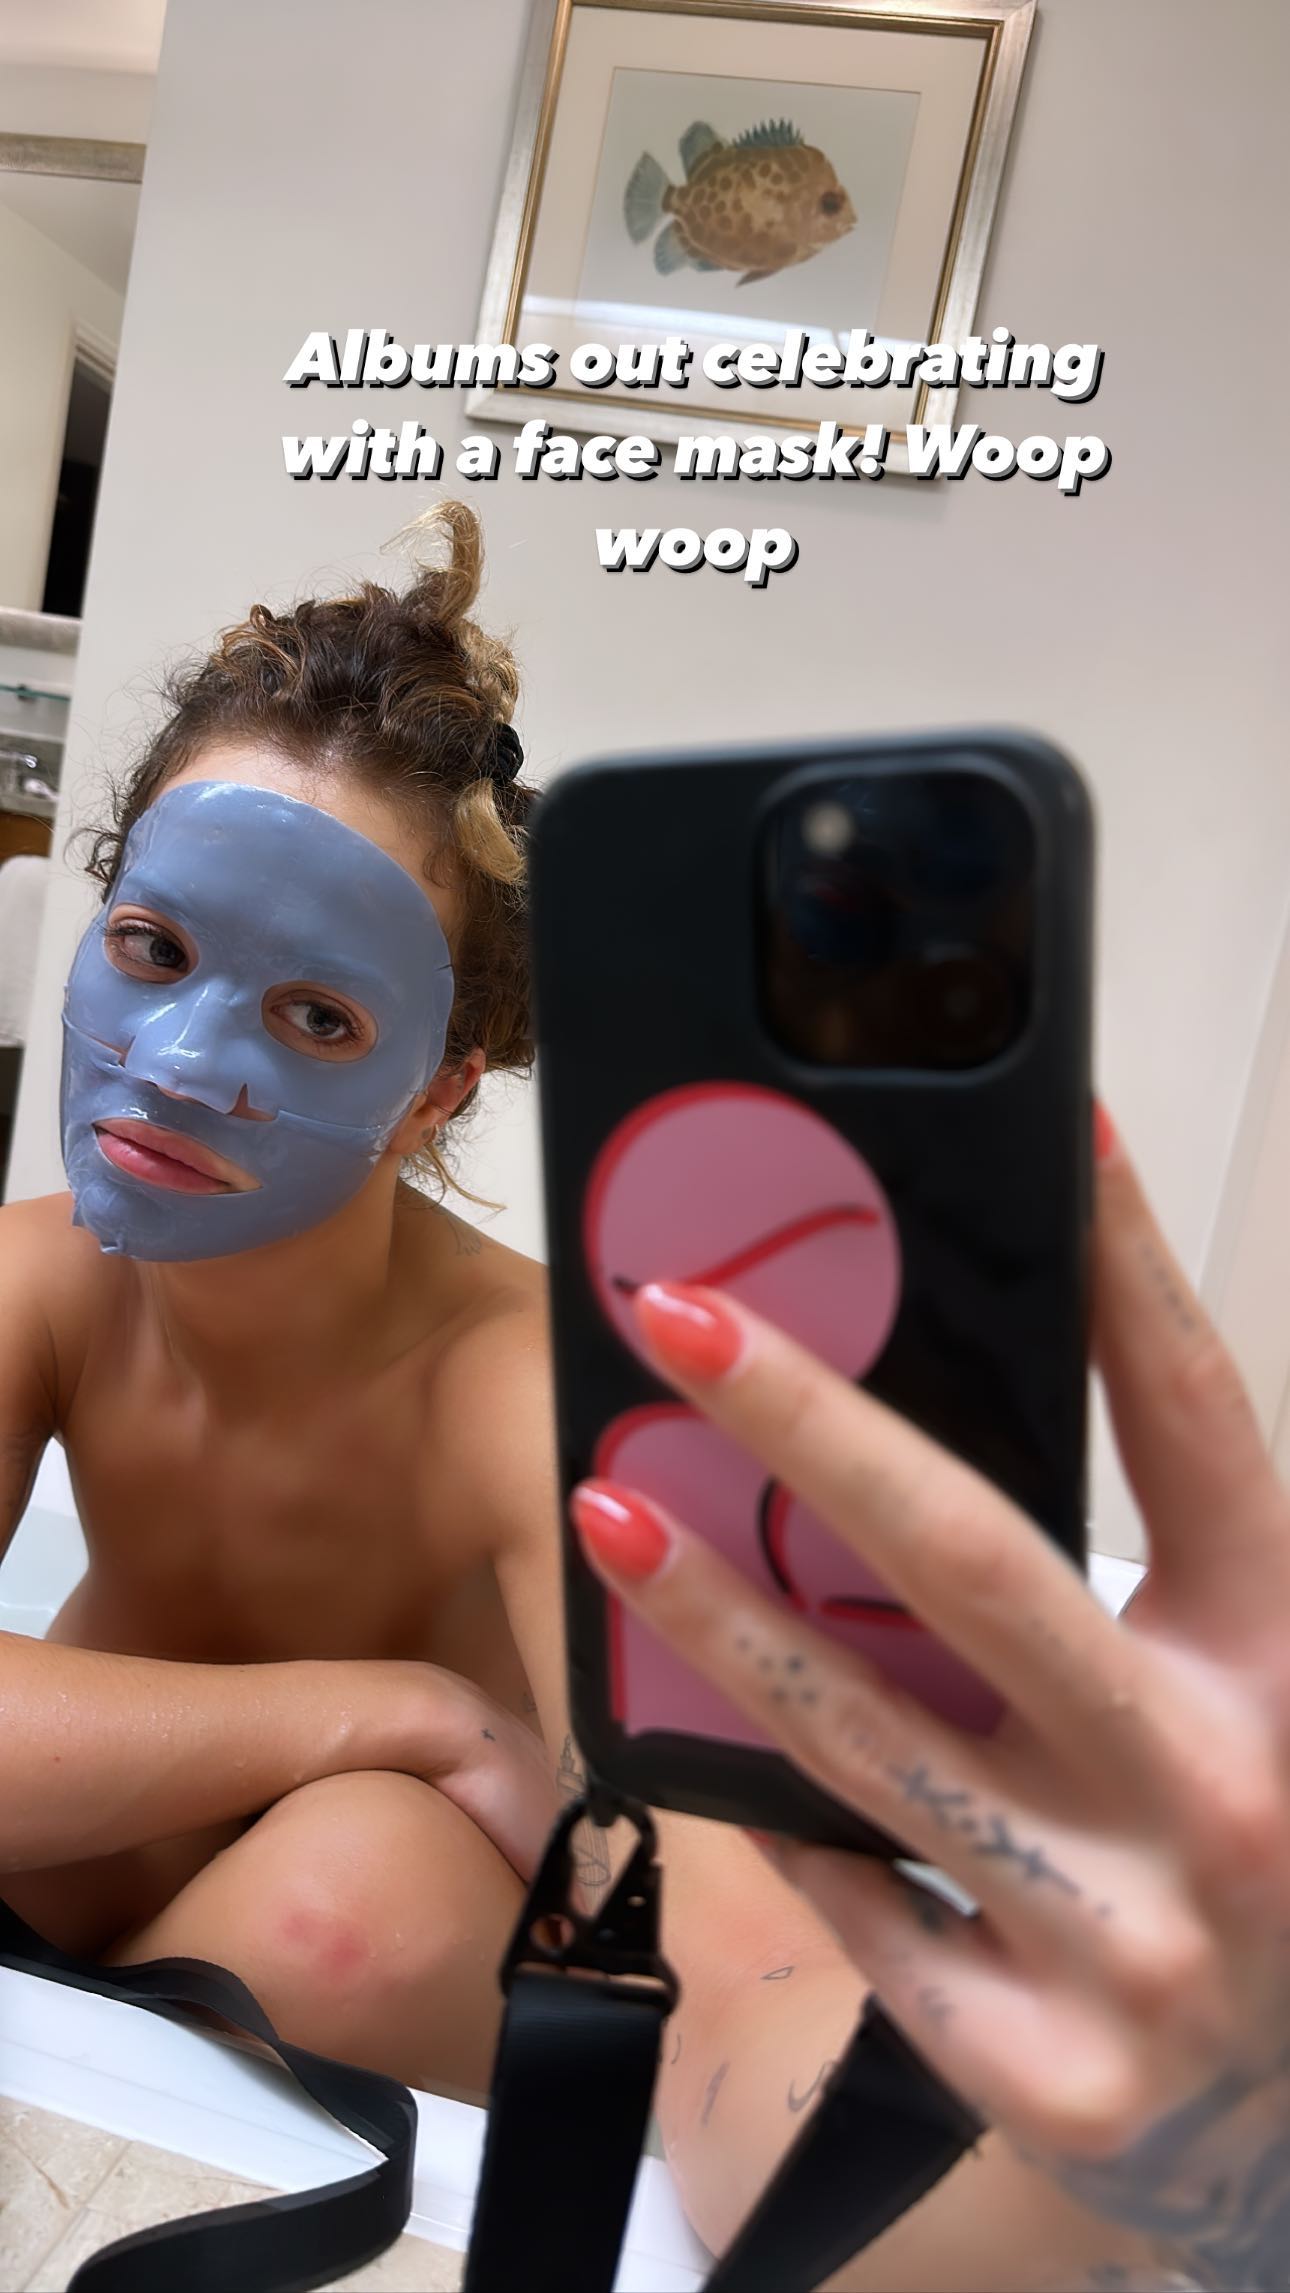 Rita Ora Celebrates With a Face Mask!